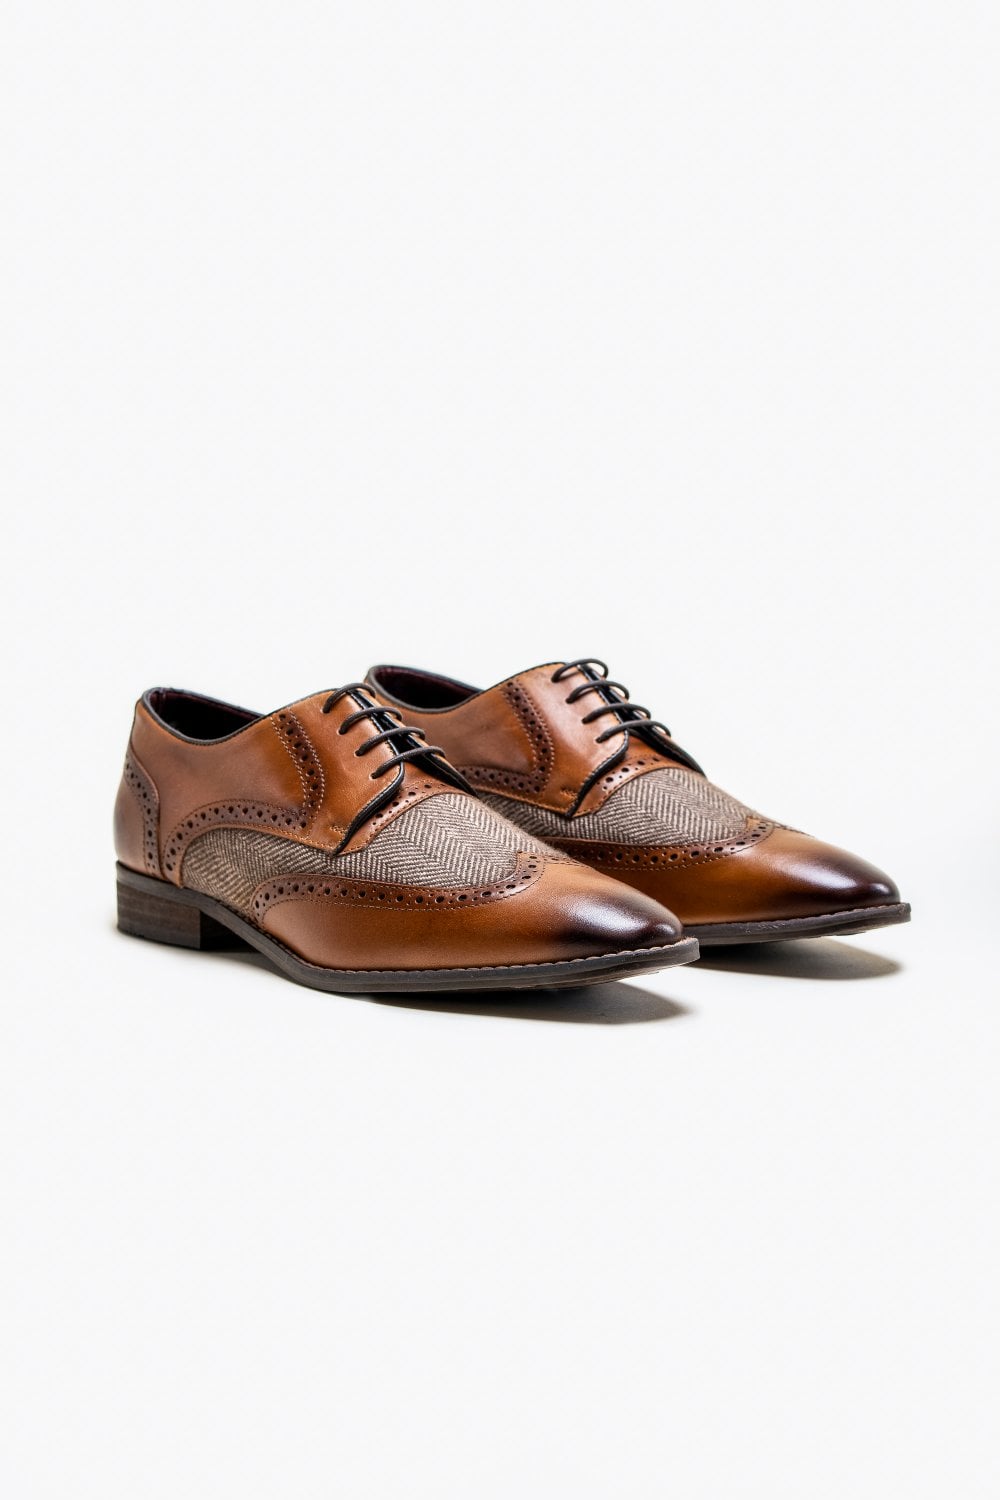 Cavani Faro Tweed Shoes - Brown